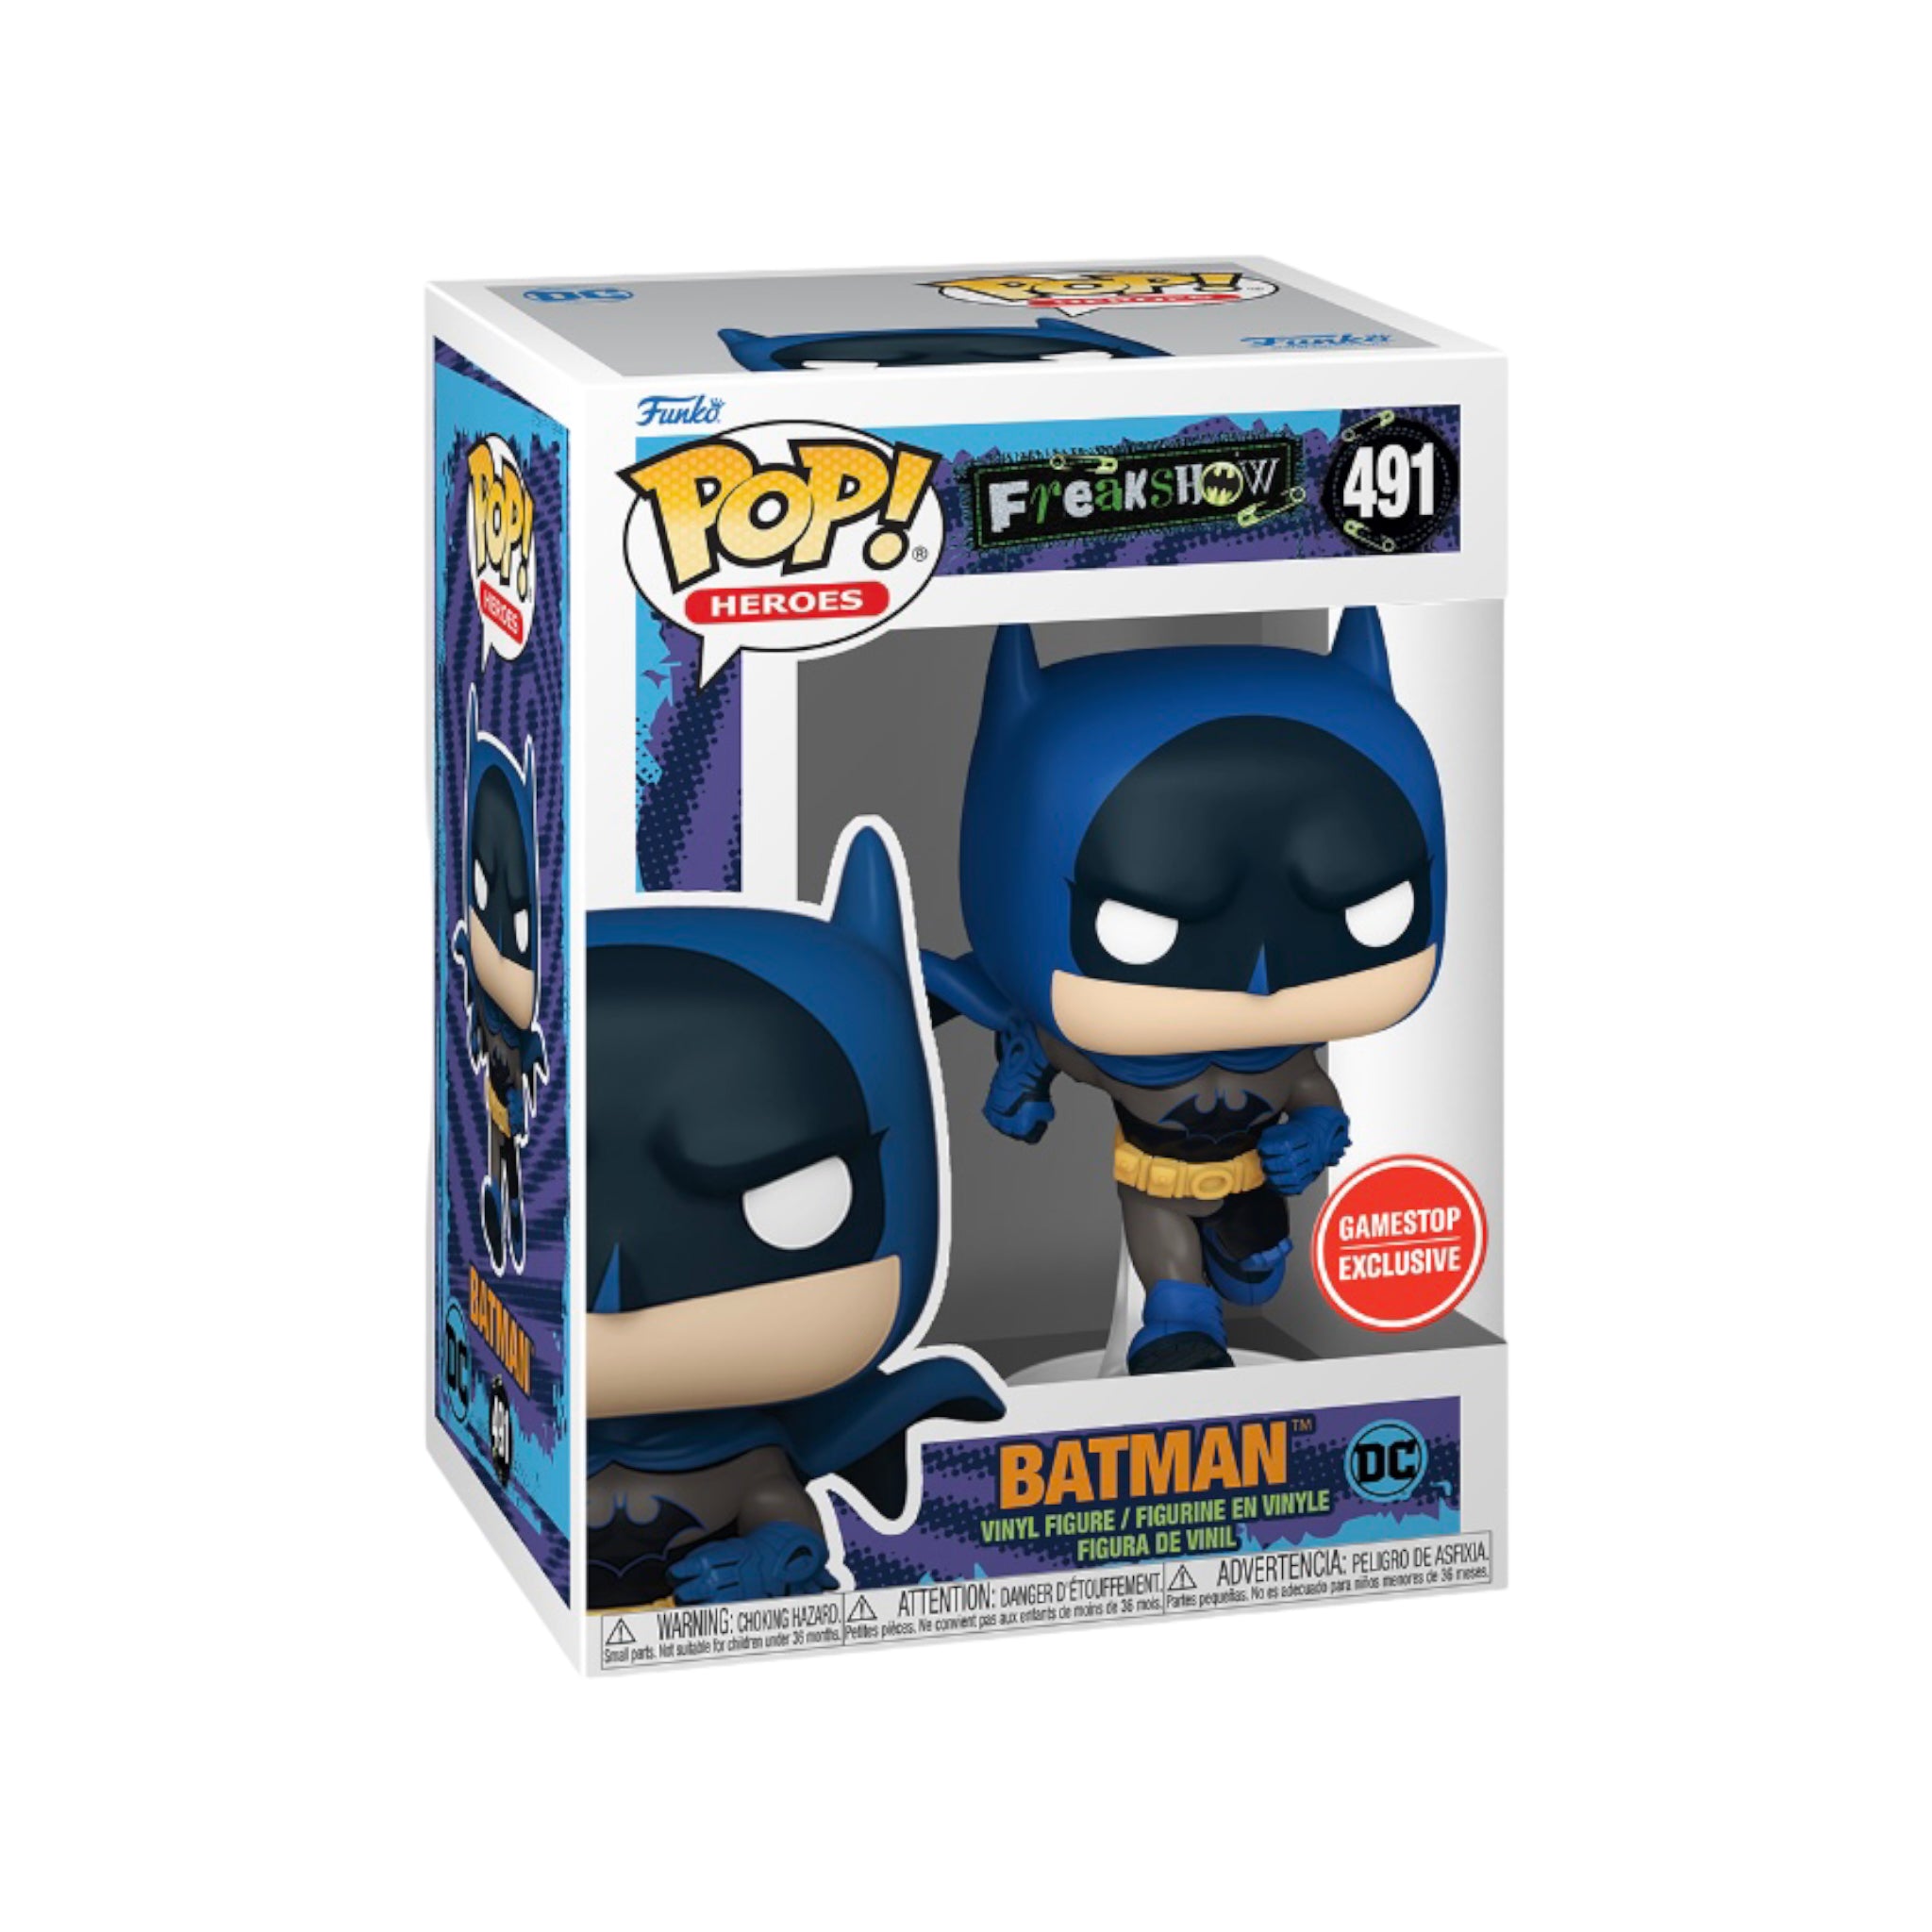 Batman #491 Funko Pop! - Batman Gotham Freakshow - GameStop Exclusive